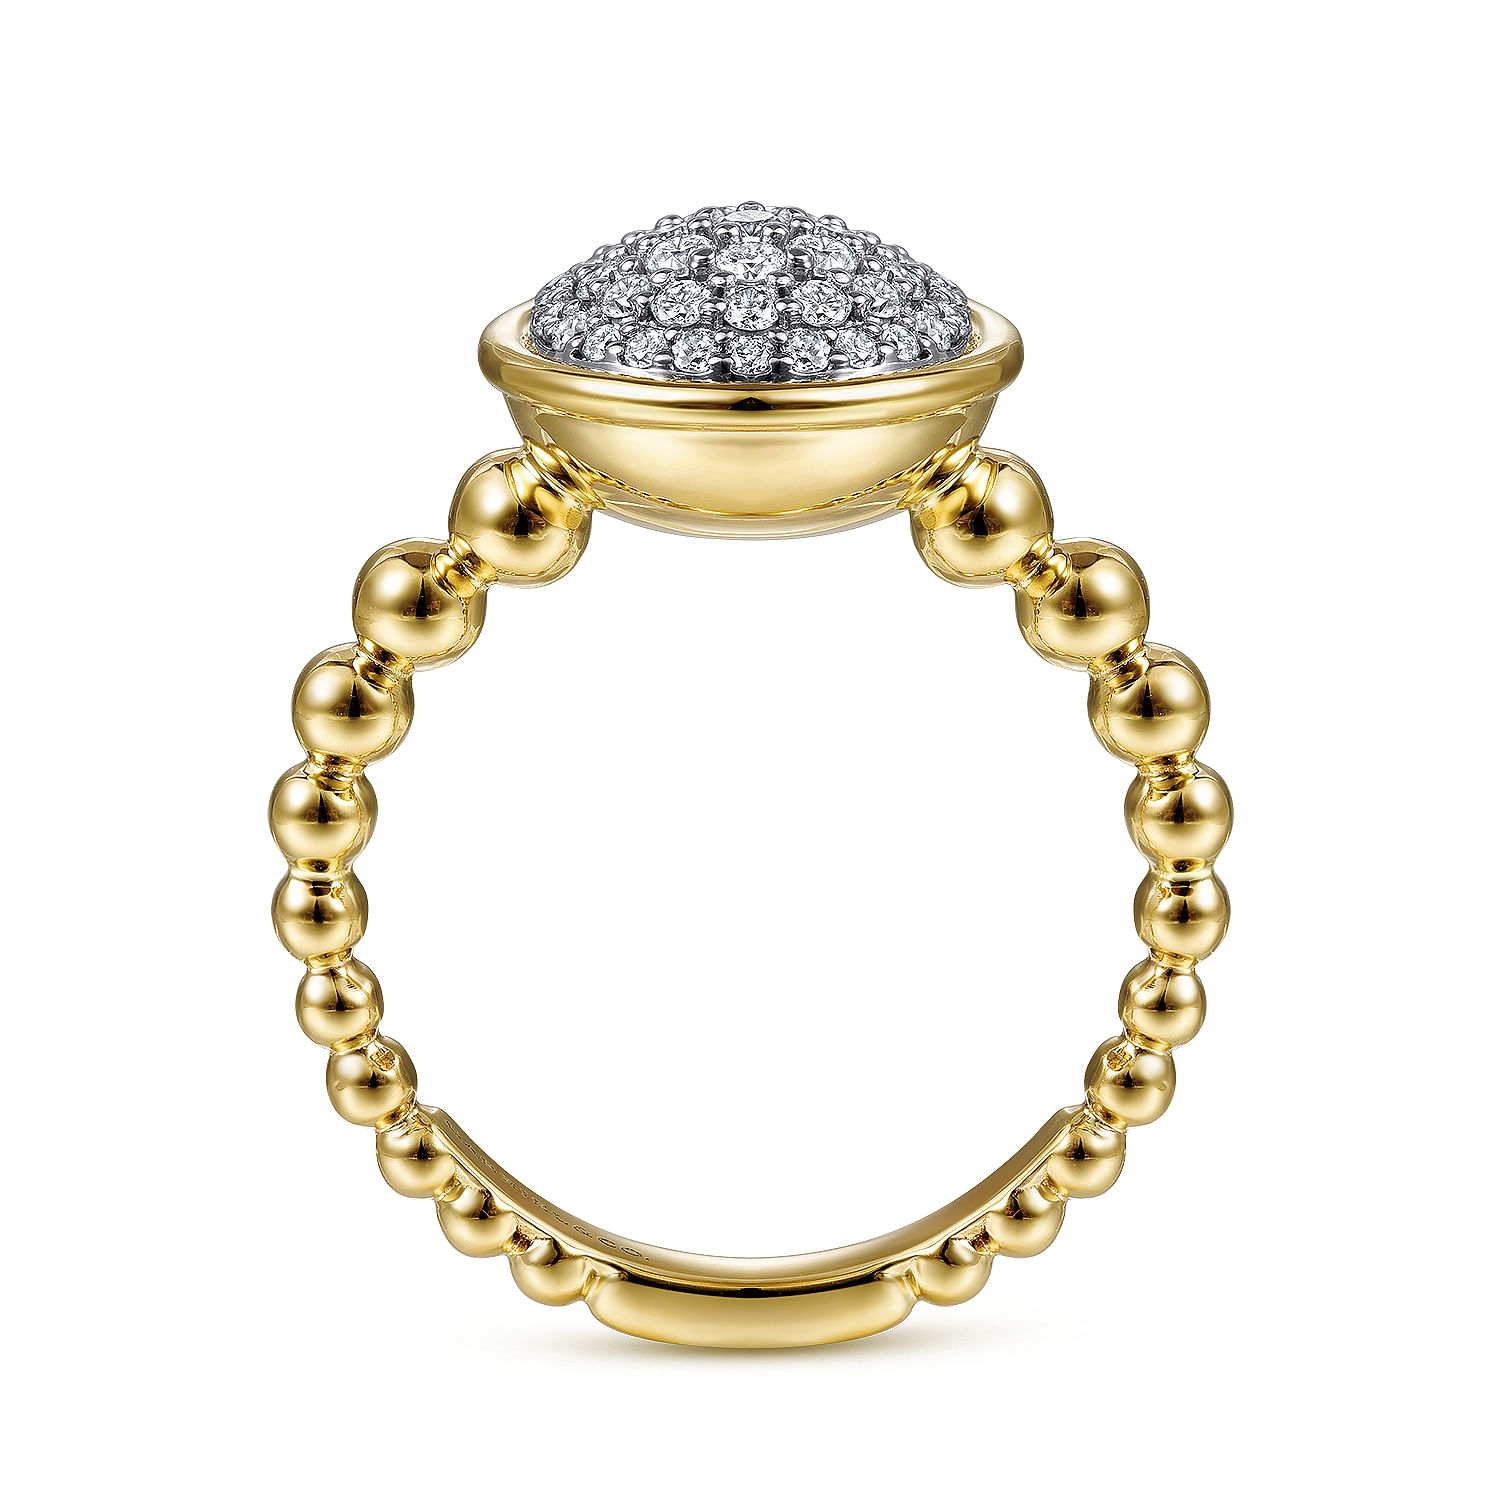 14K White-Yellow Gold Round Diamond Pavé Center Ring with Bujukan Bead Shank